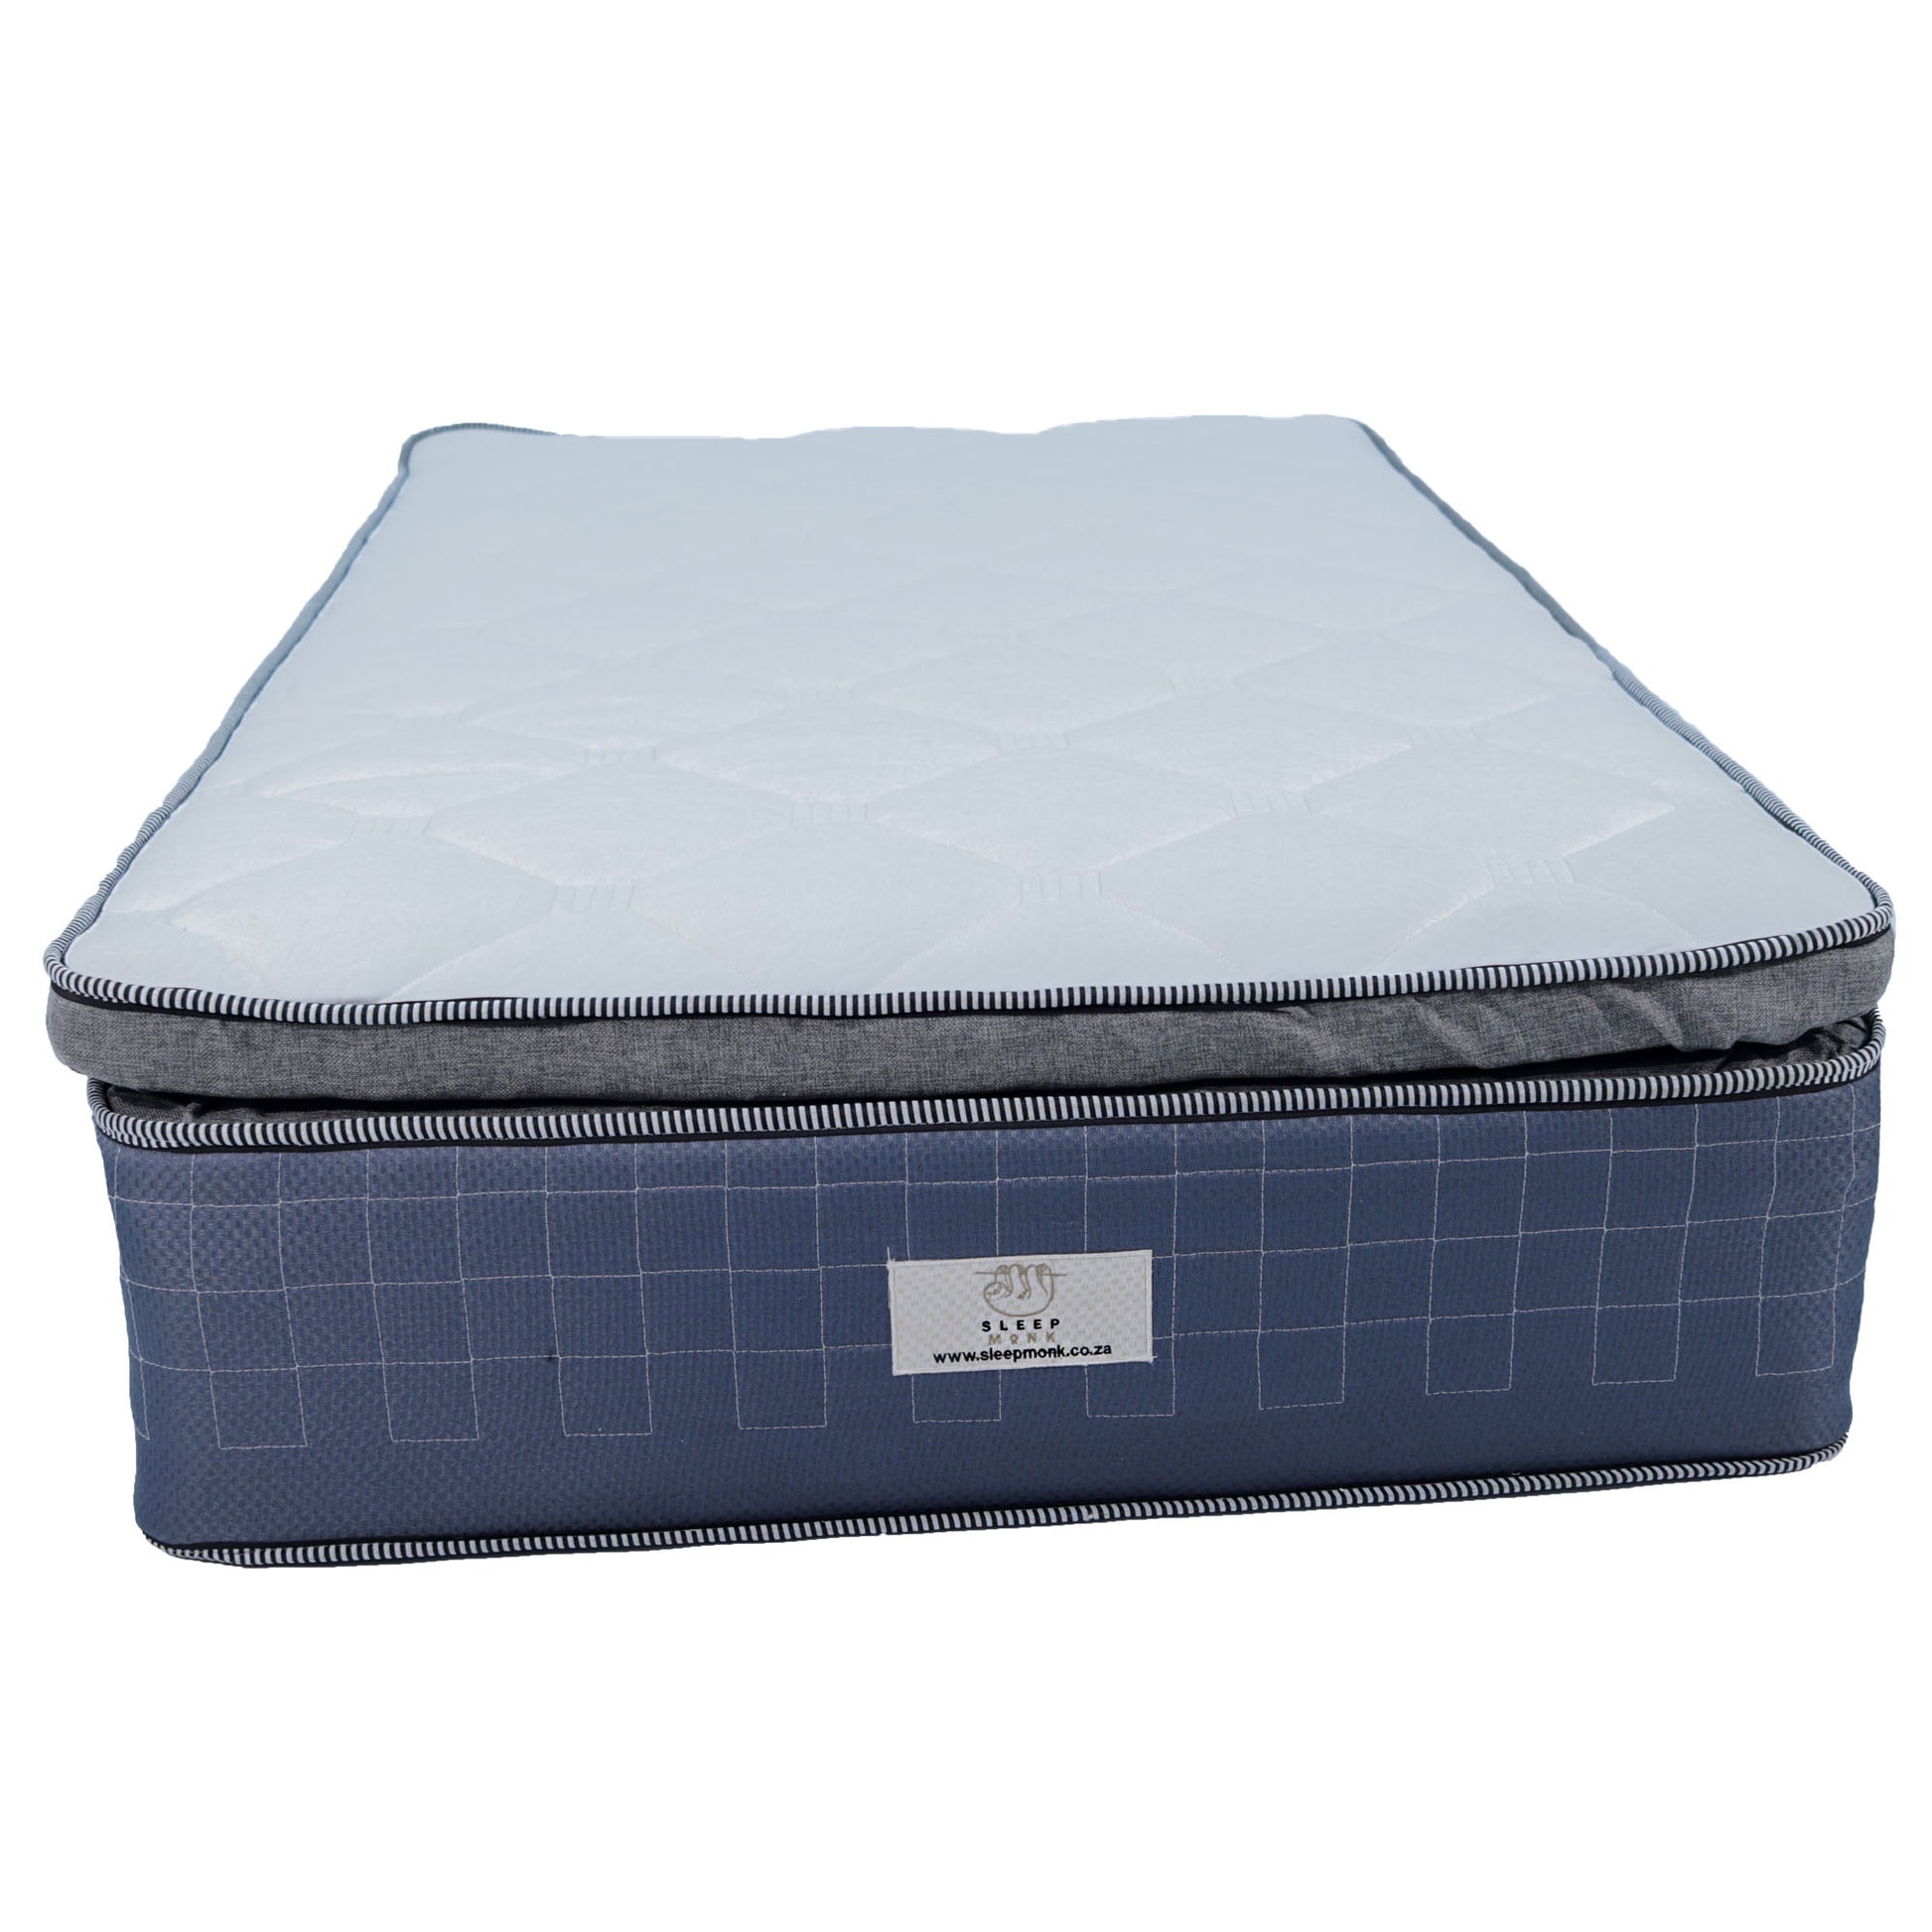 Executive Spine Three Quarter Mattress - Premium Bed from SLEEPMONK - Just R 3700! Shop now at SLEEPMONK